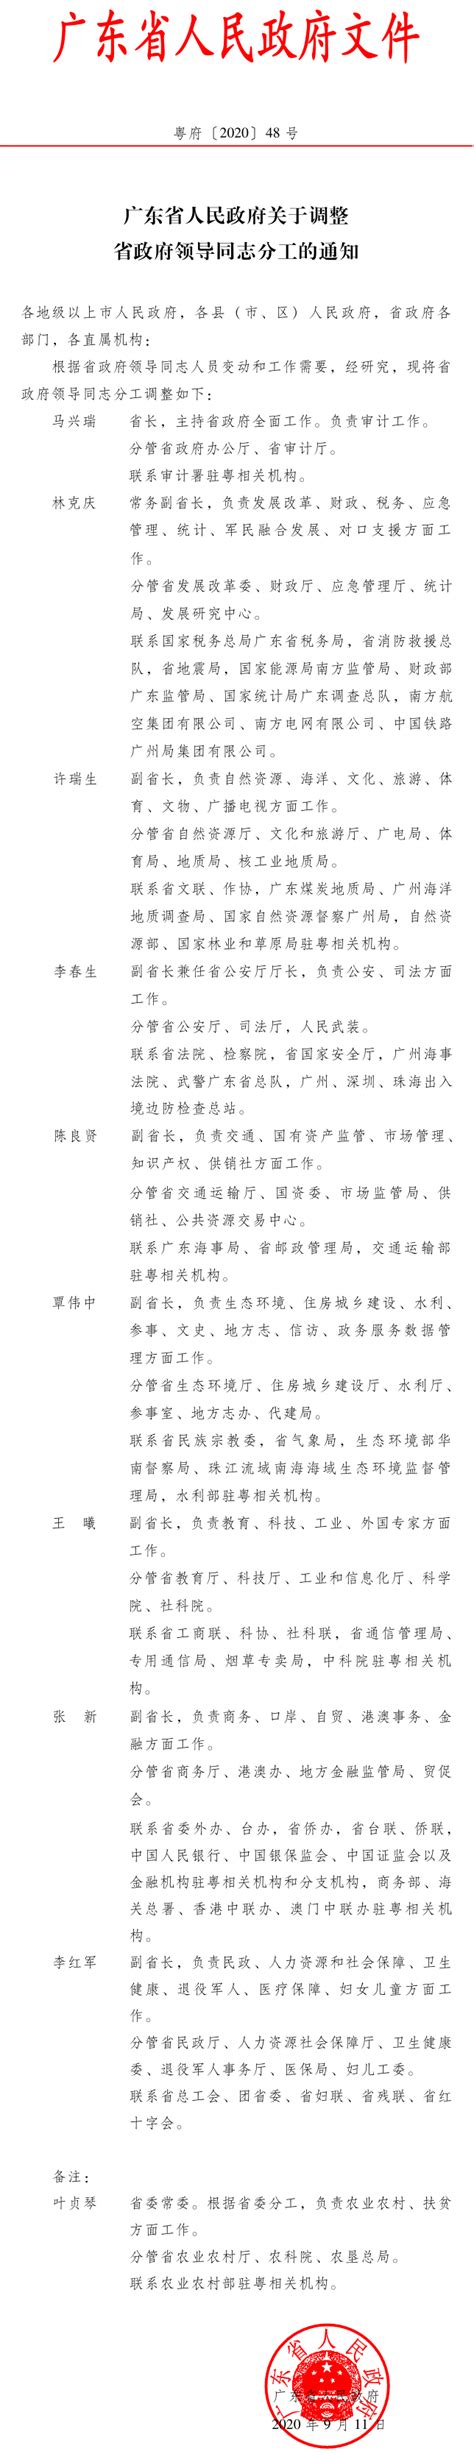 广东省人民政府关于调整省政府领导同志分工的通知 广东省人民政府门户网站